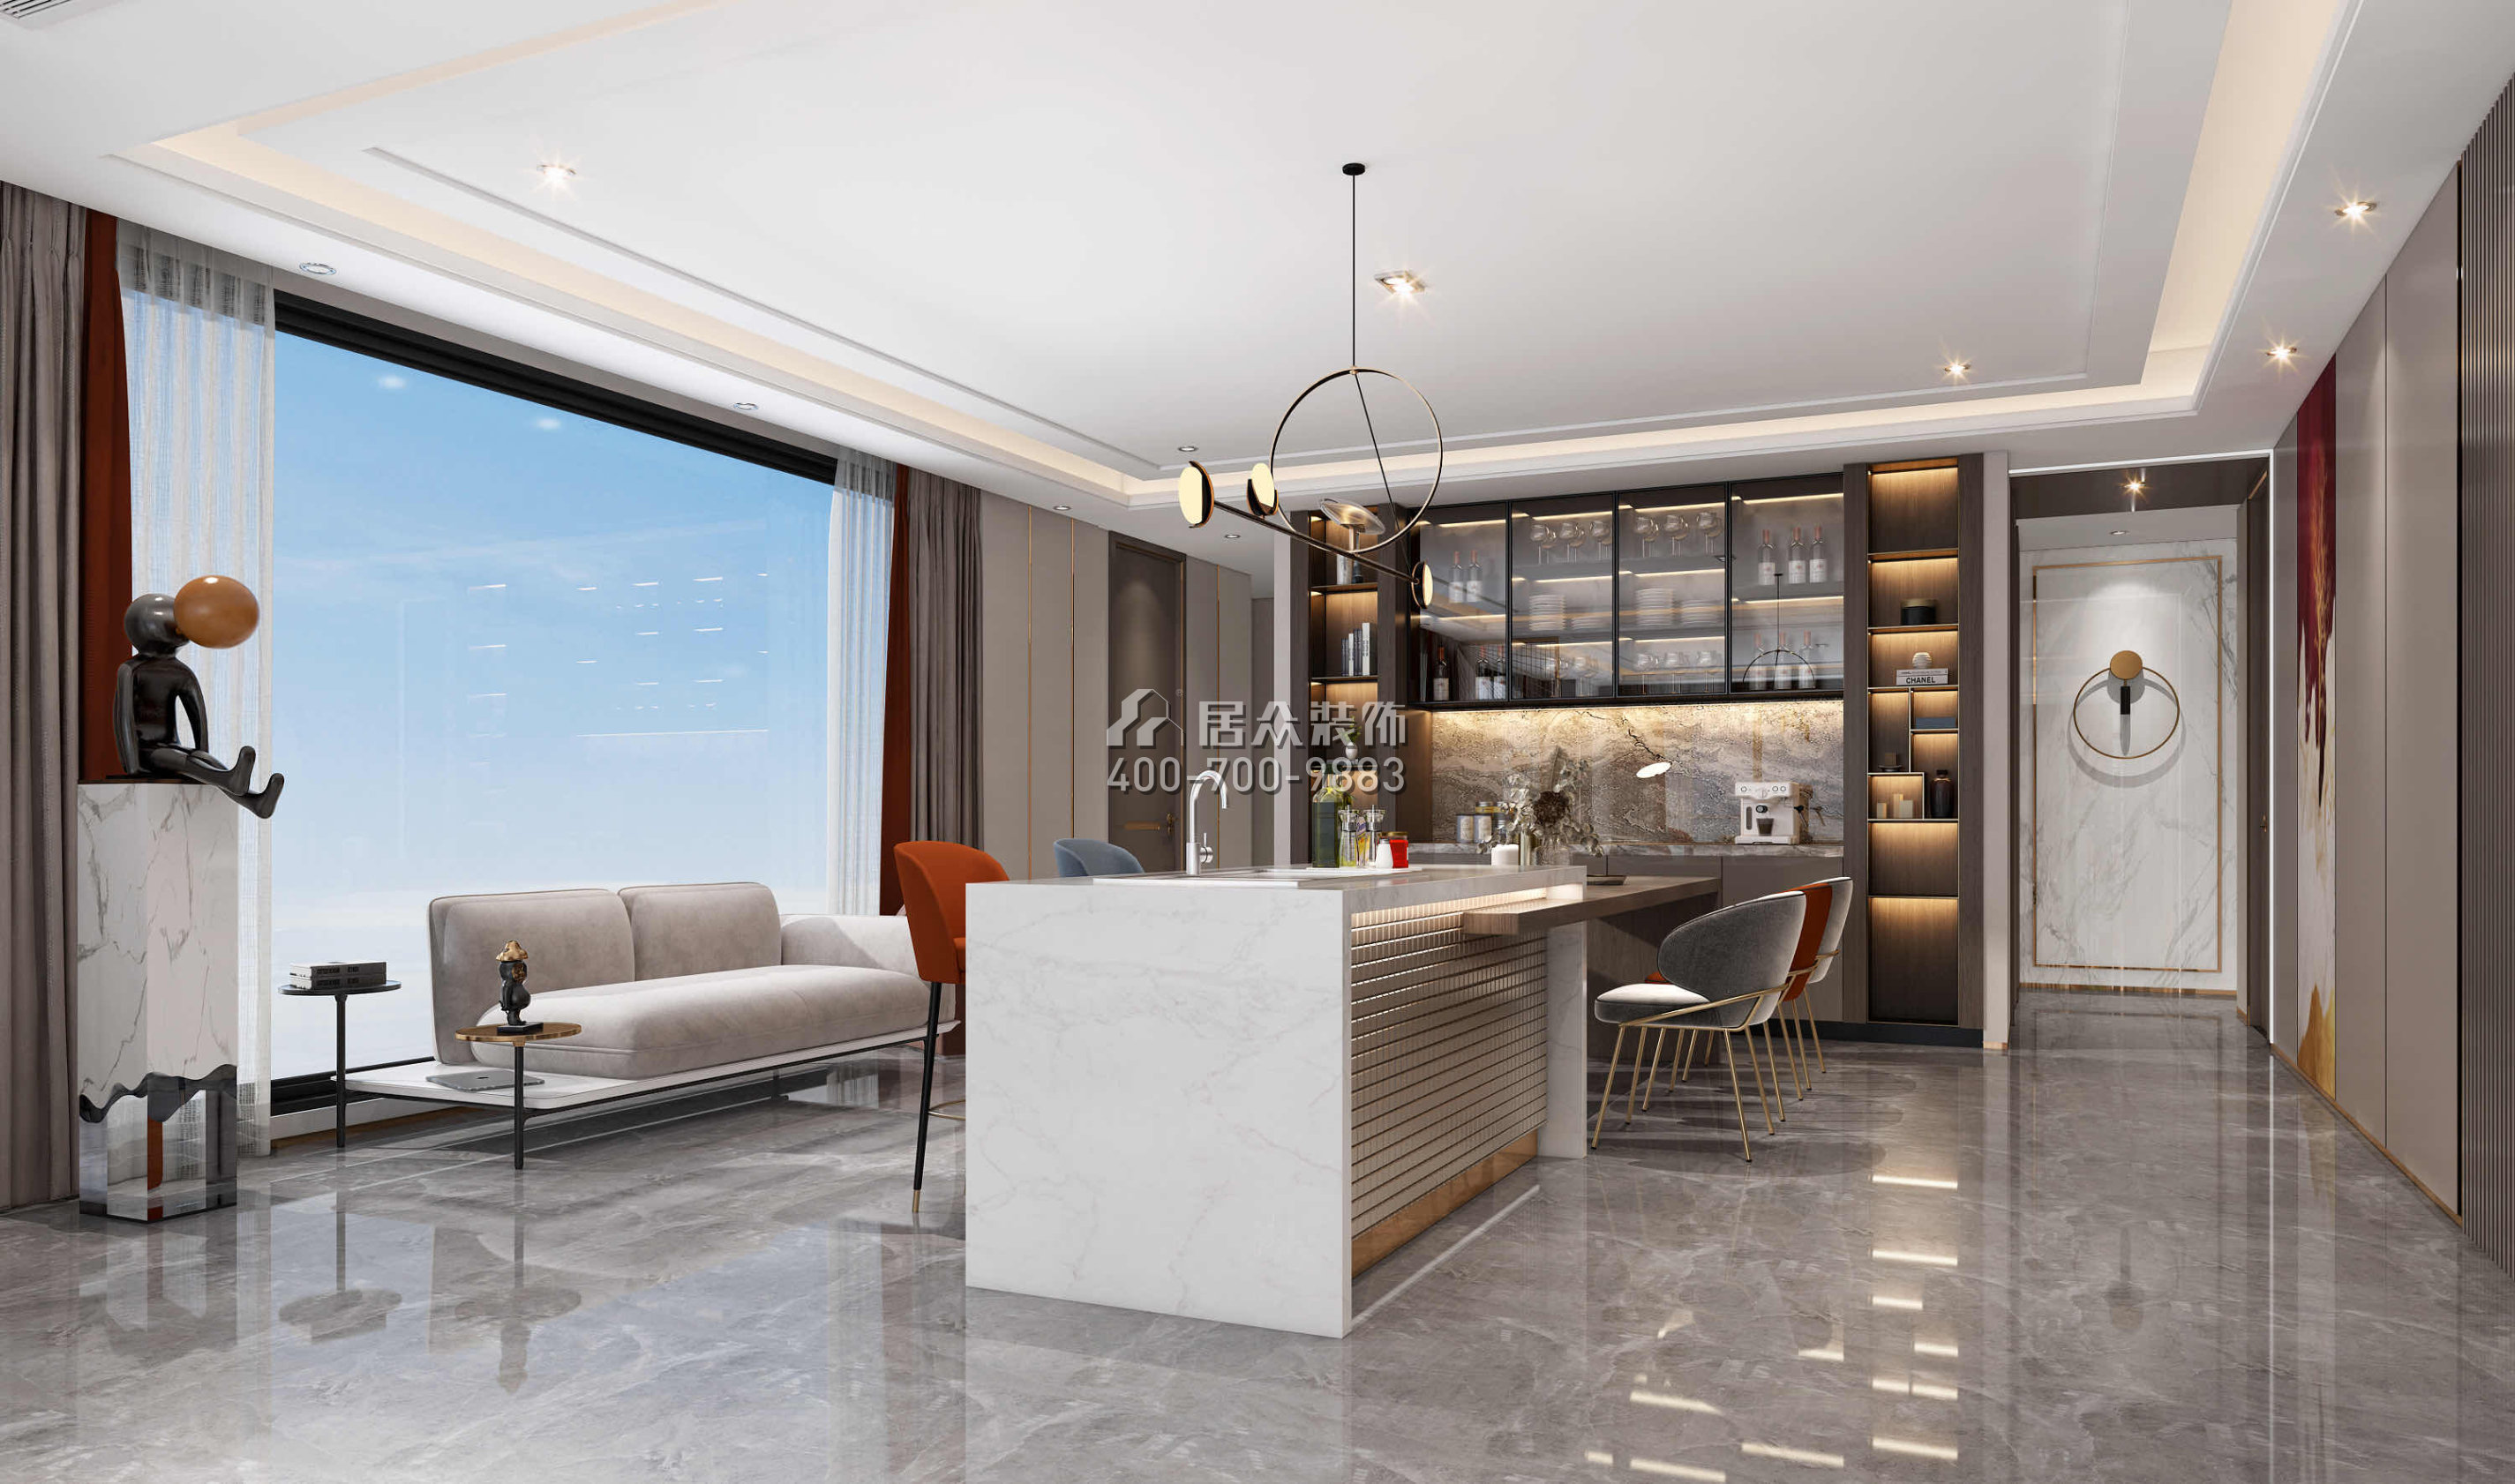 天鹅堡370平方米现代简约风格平层户型家庭吧台装修效果图